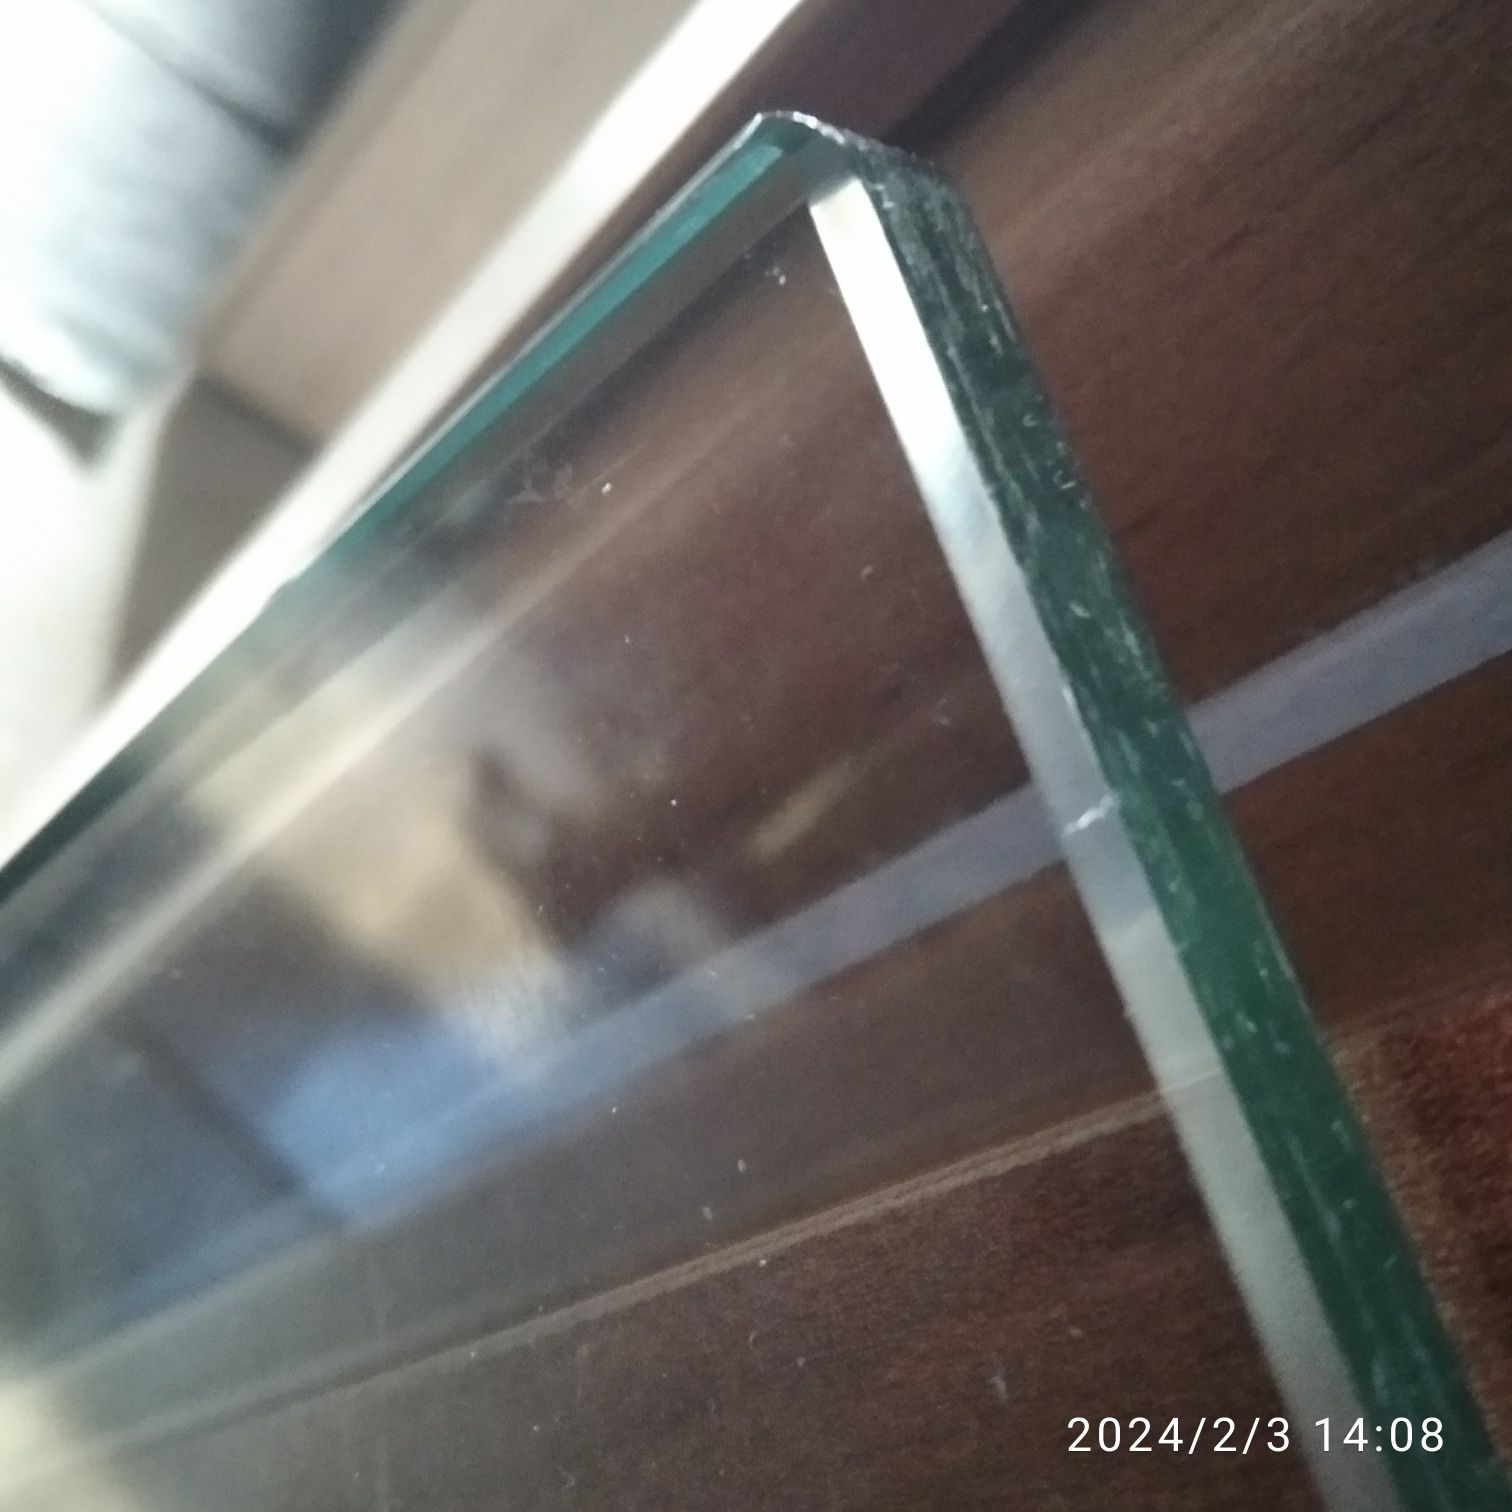 Blat stołu szkło 7 mm
5 mm, fazowane. 
Wymia